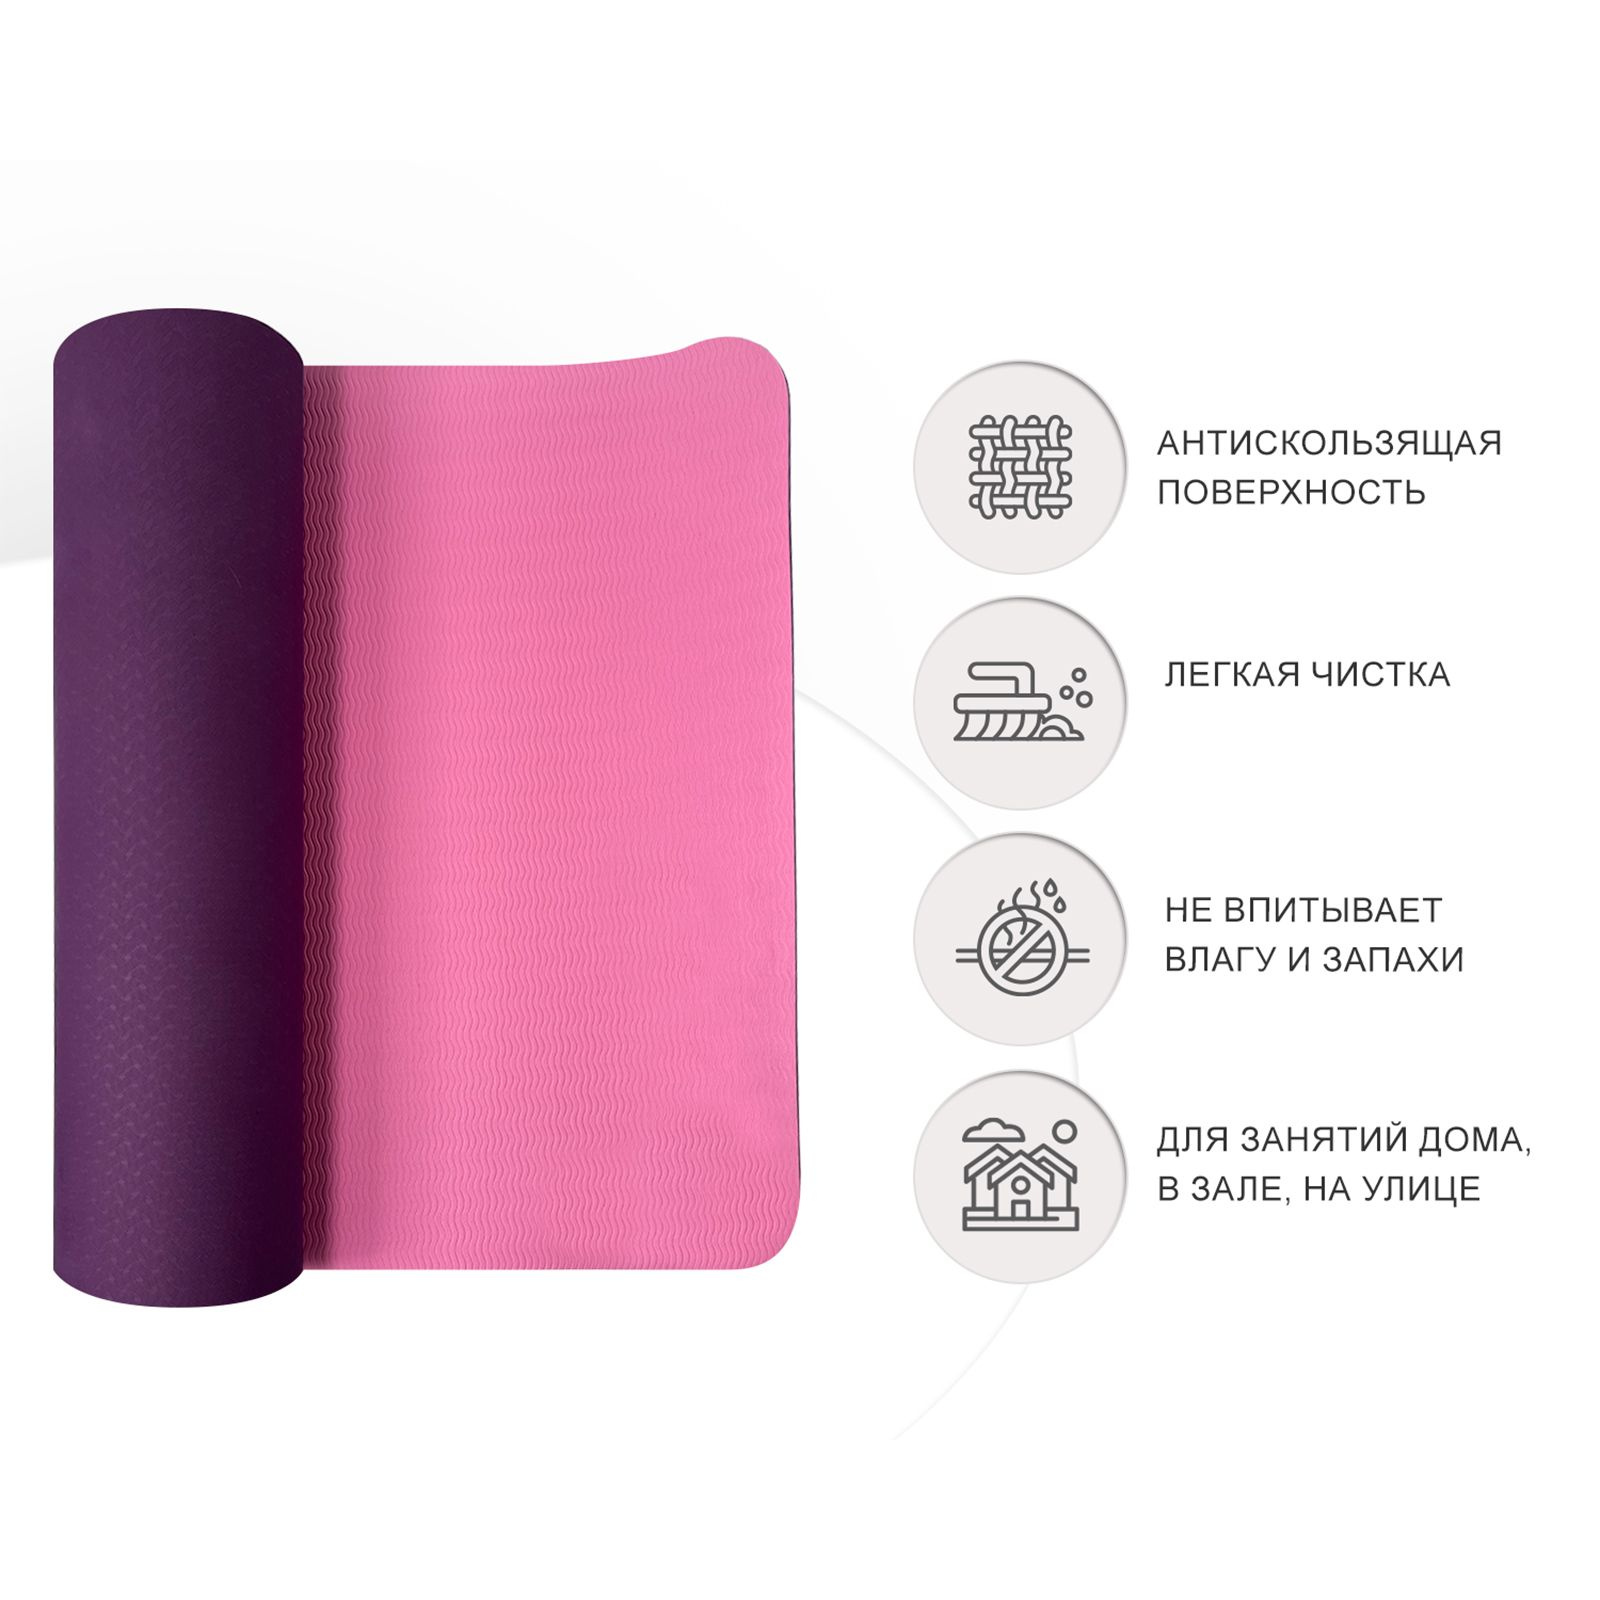 Коврик для йоги UnixFit двусторонний, двуцветный, фиолетовый